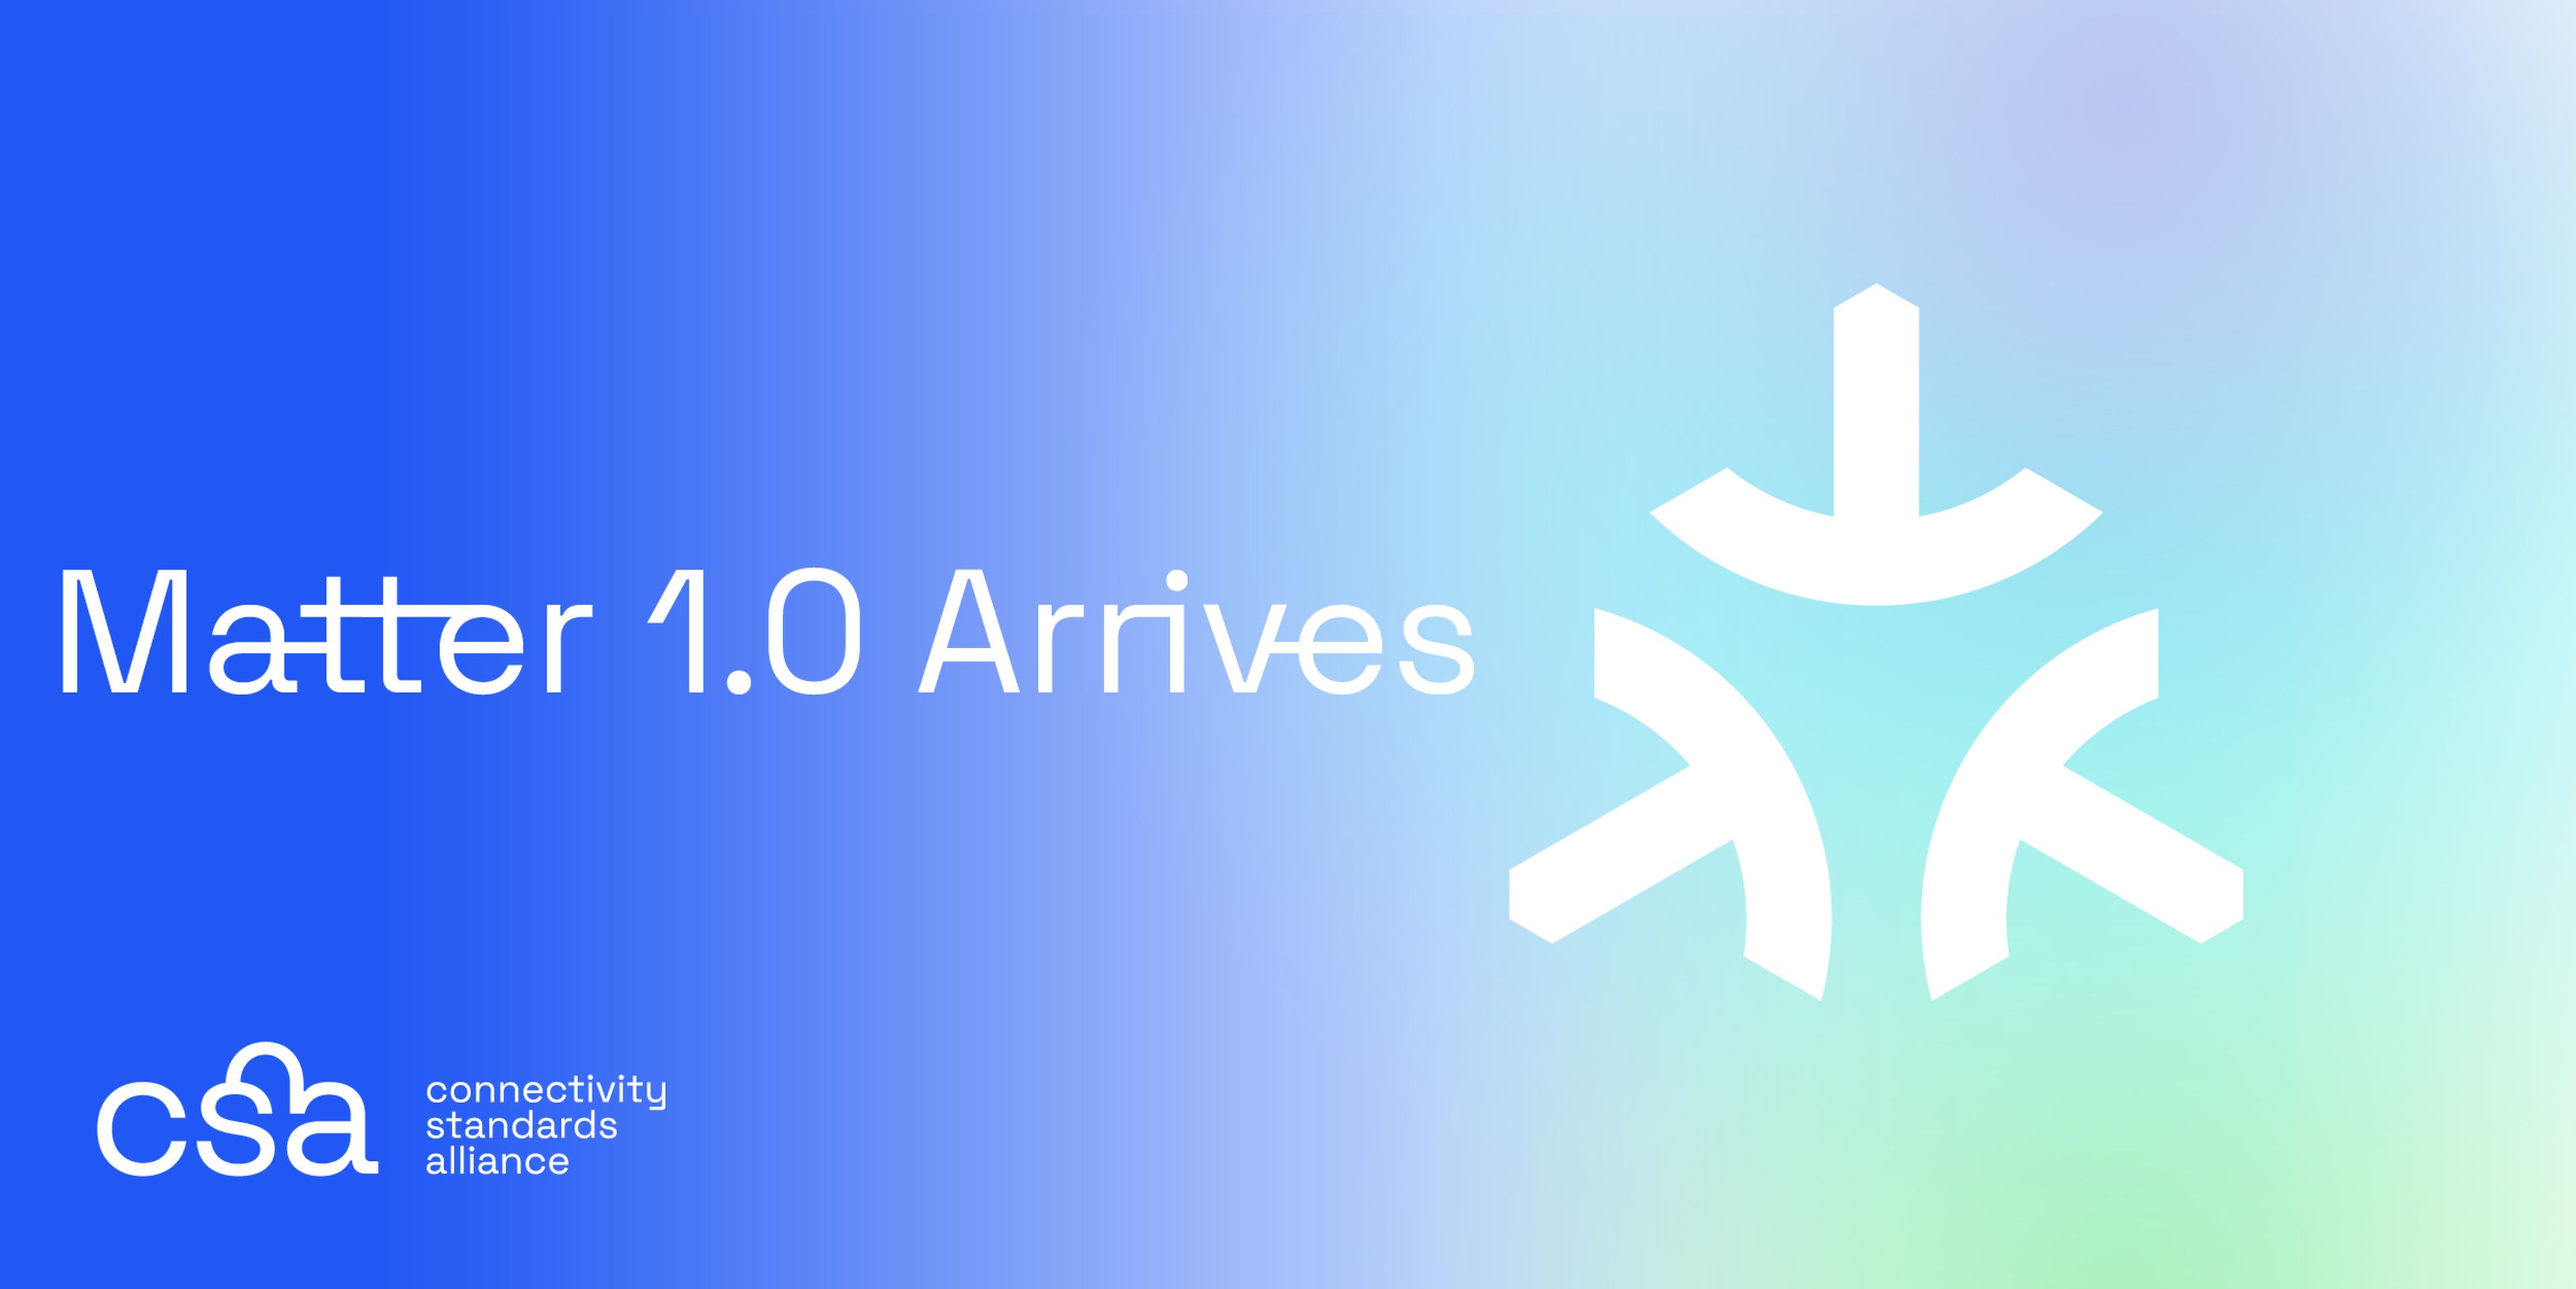 Se hace oficial el lanzamiento del estándar smarthome Matter 1.0, que pronto llegará a Apple con el lanzamiento de iOS 16.1